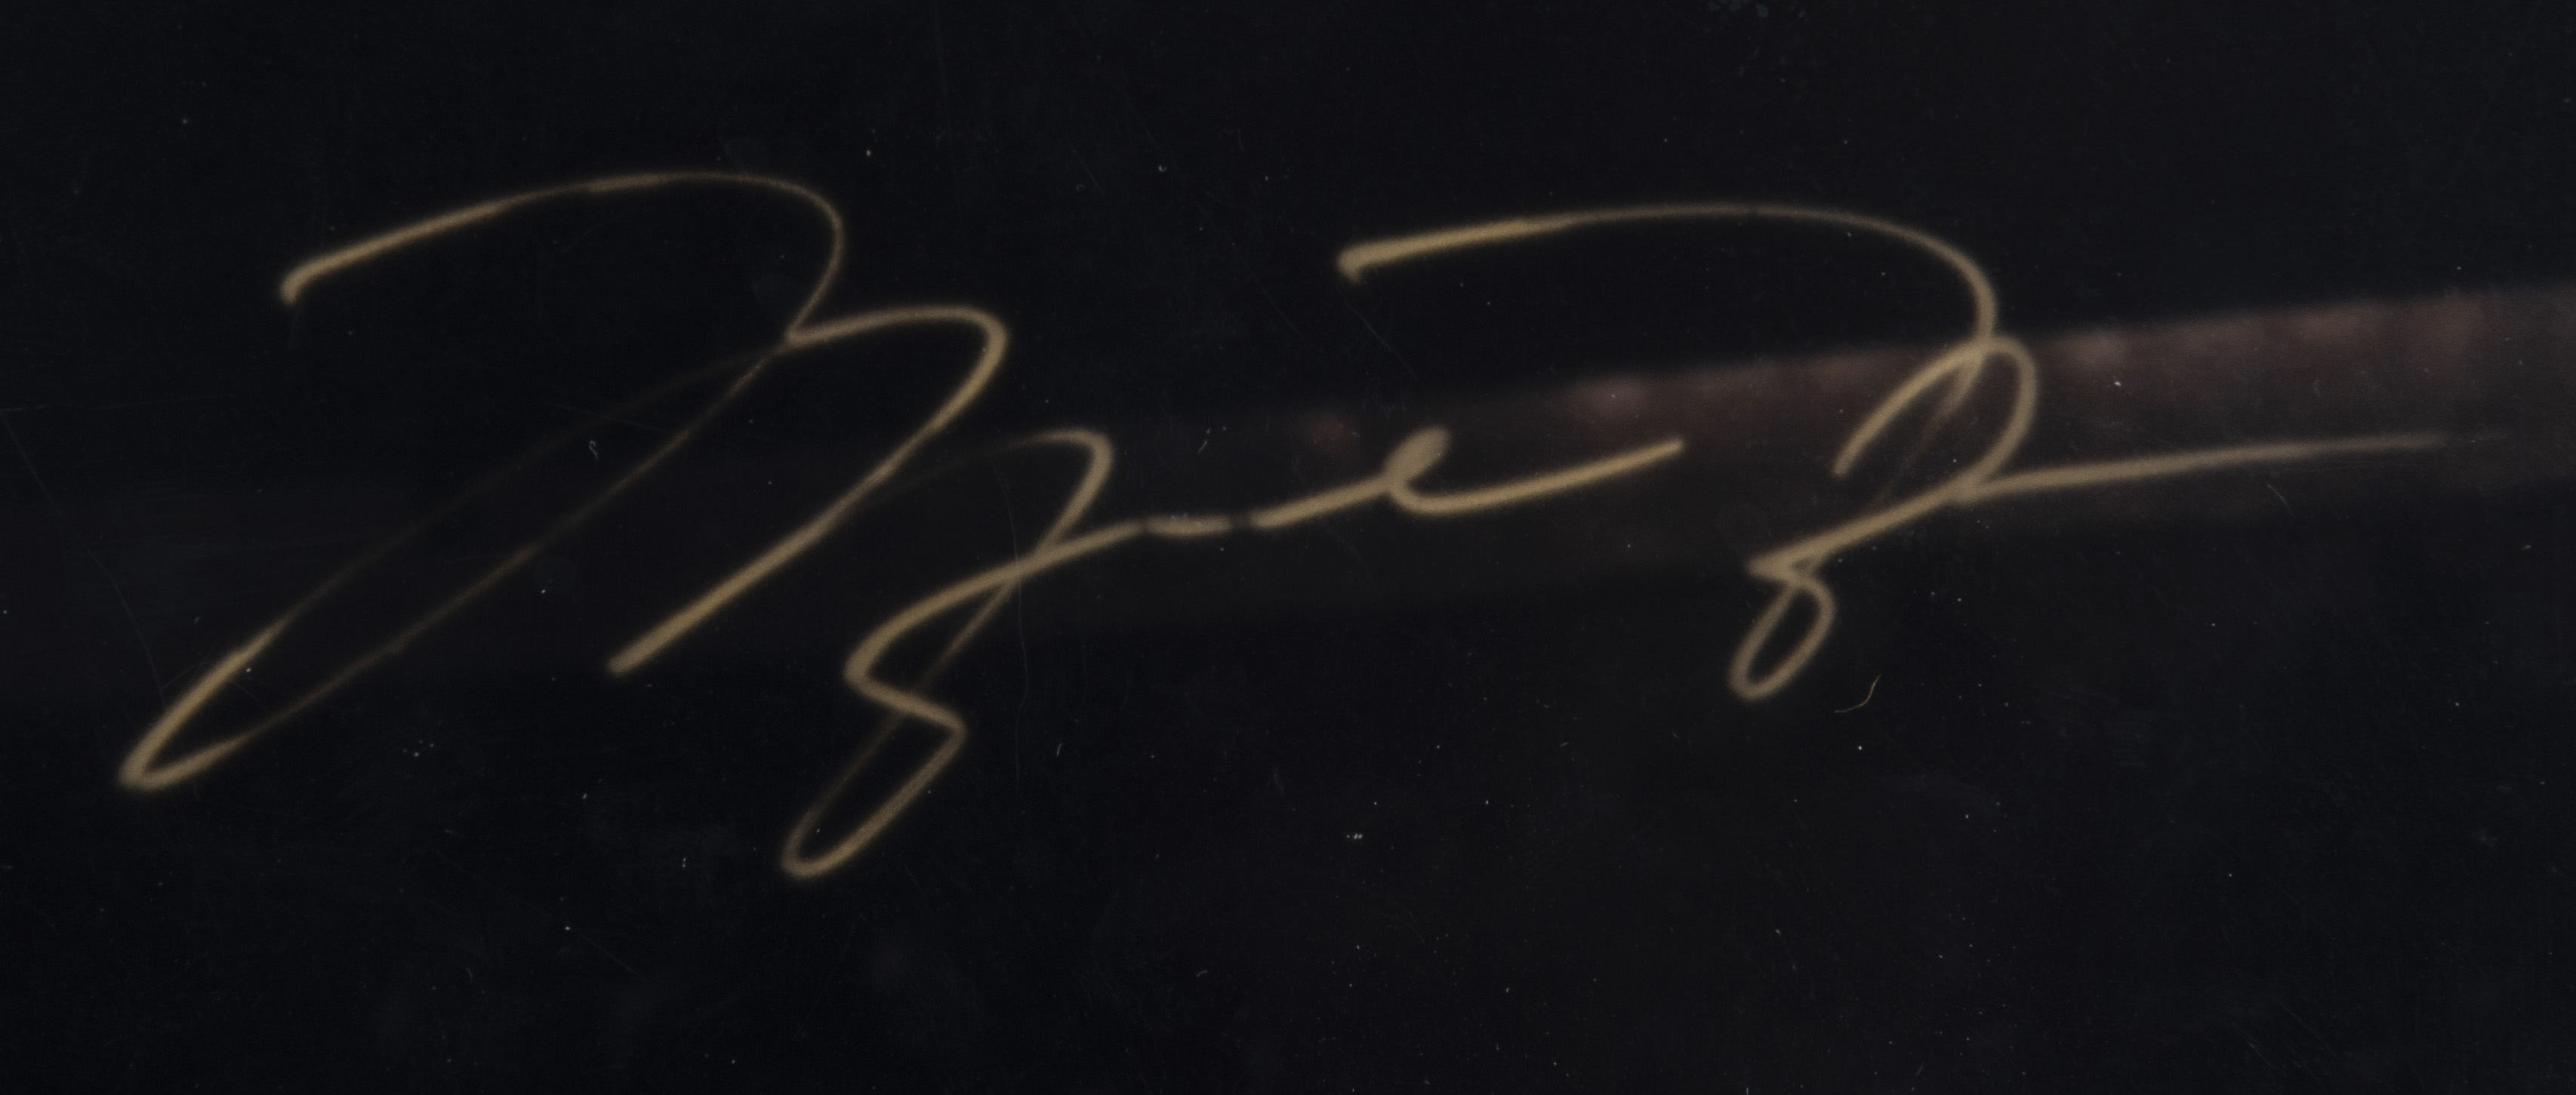 Lot Detail - Michael Jordan Signed 16x20 Framed Photo - LE 64/123 (UDA ...